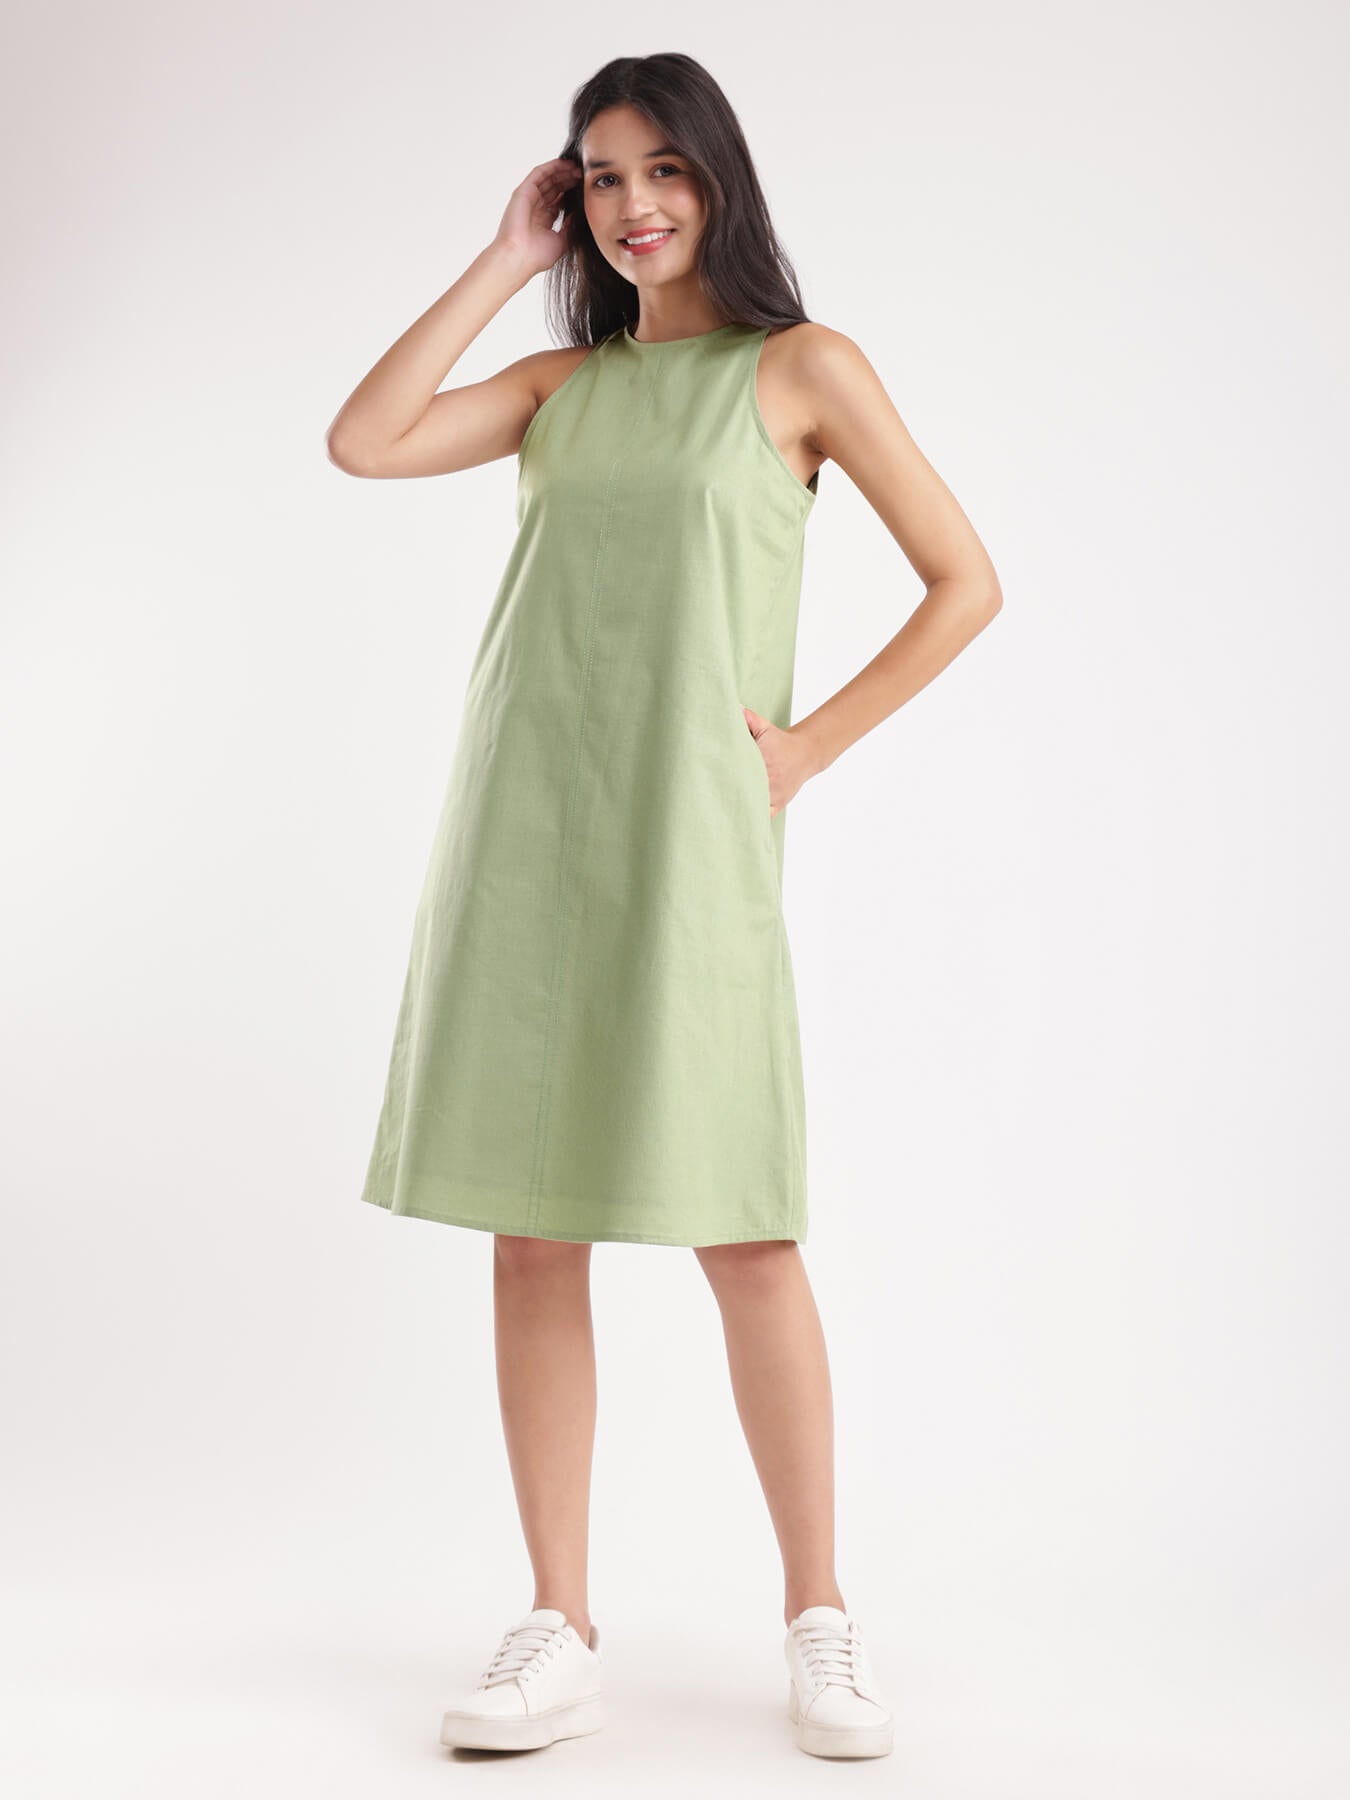 Linen A-line Dress - Sap Green